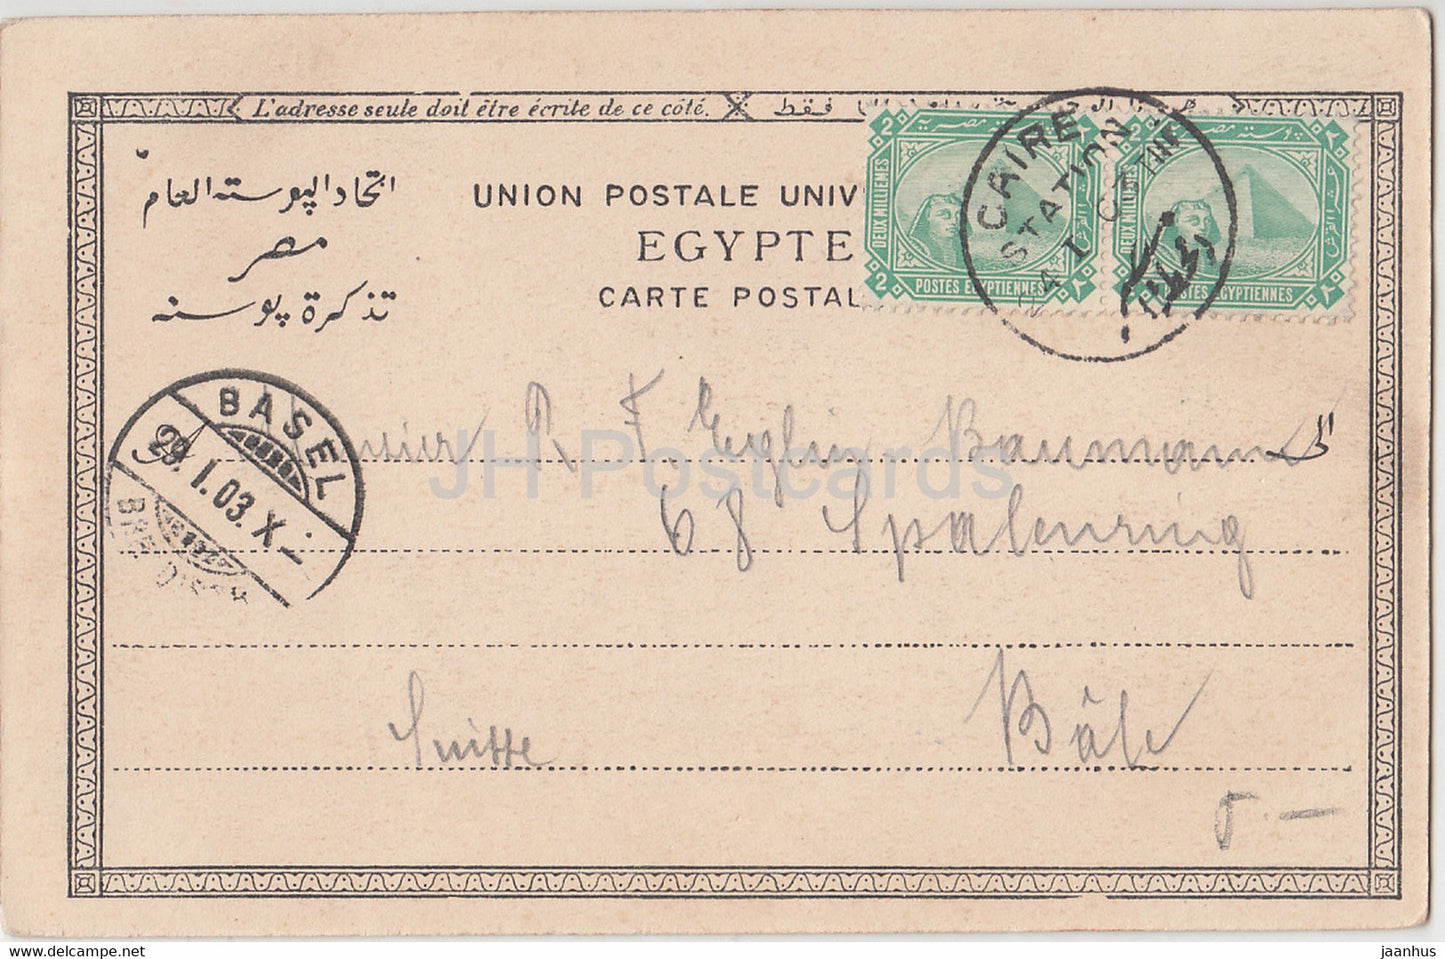 Karnak - Obélisque - monde antique - 202 - carte postale ancienne - 1903 - Egypte - utilisé